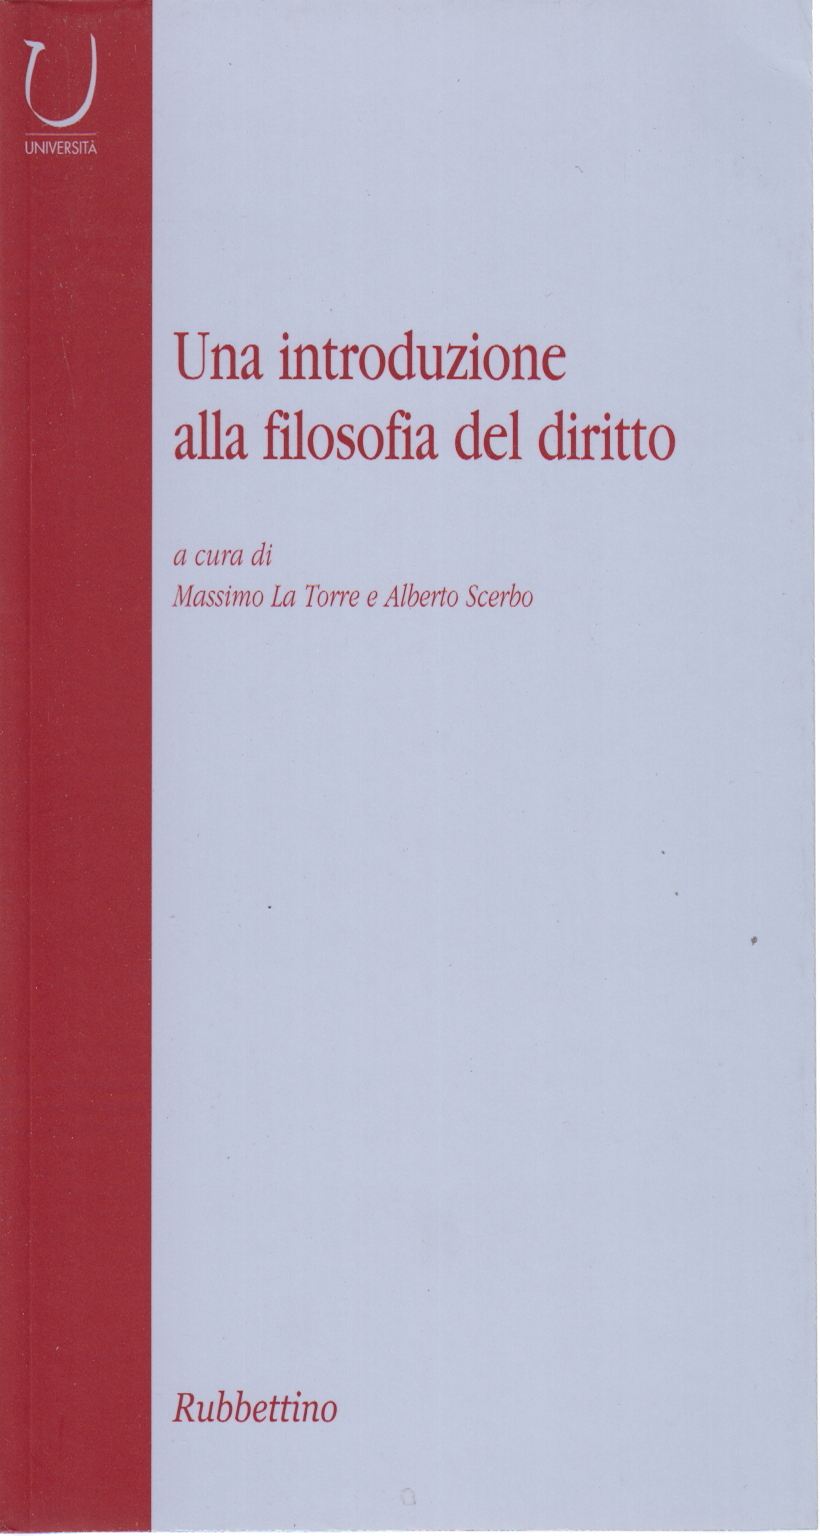 Una introduzione alla filosofia del diritto, Massimo La Torre Alberto Scerbo